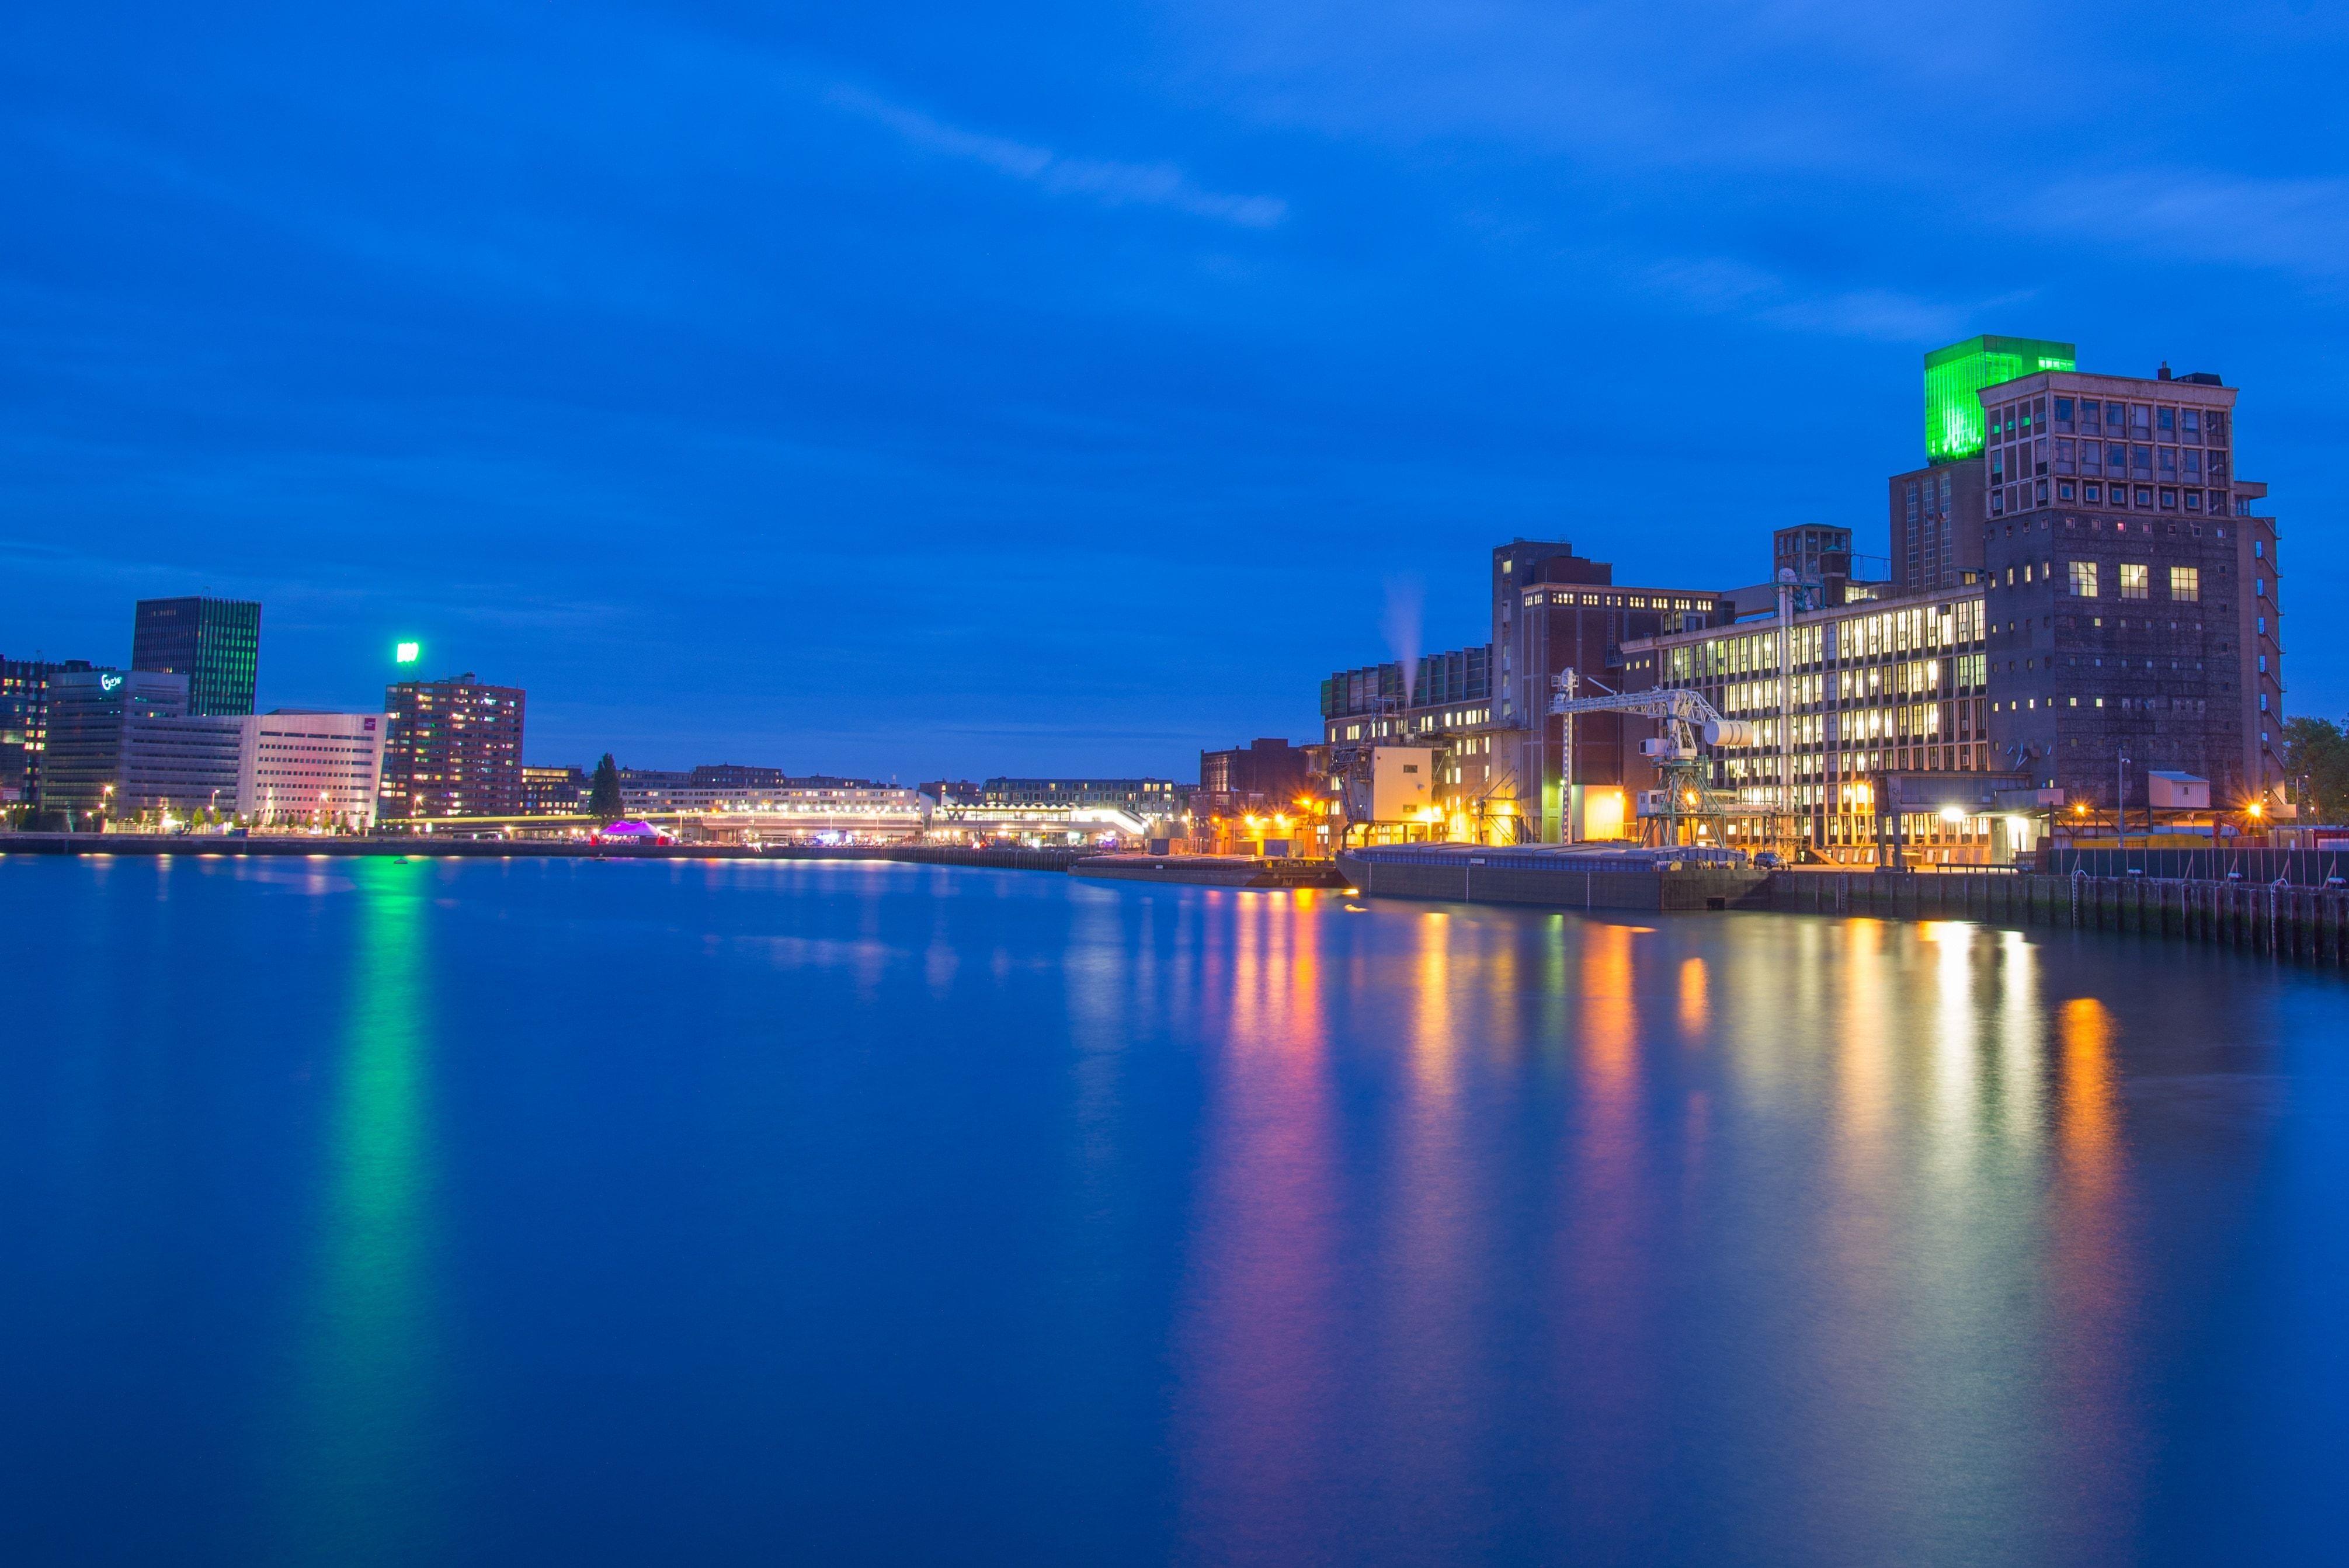 Night, Harbor, Rotterdam, Reflection, illuminated, reflection free